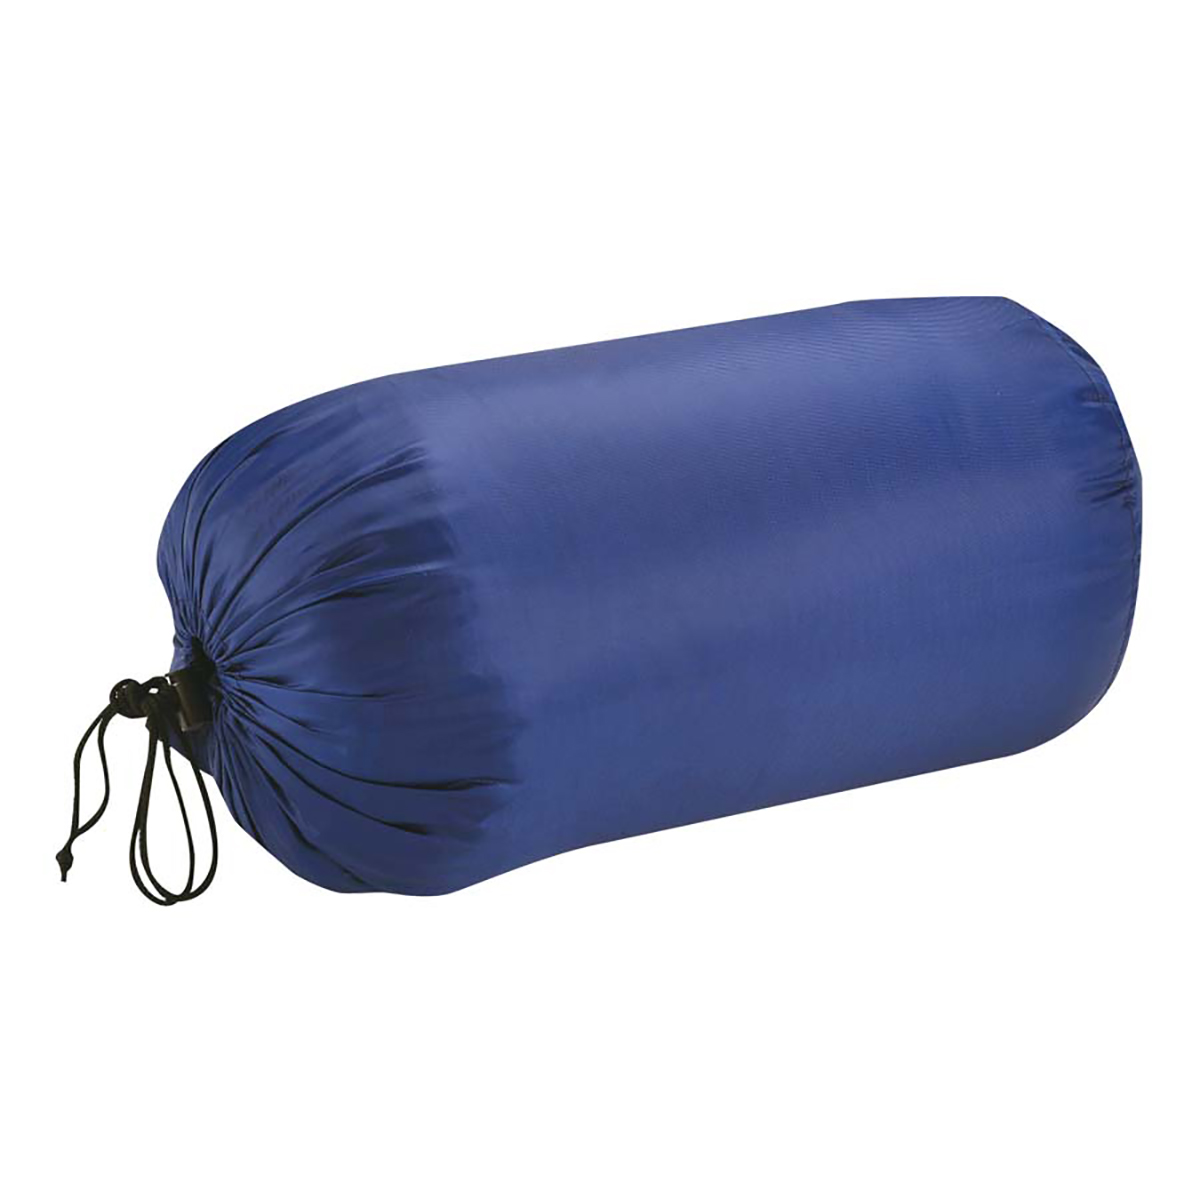 プレーリー 封筒型シュラフ(寝袋)600(ネイビー) - アウトドア・キャンプ用品 - キャプテンスタッグ